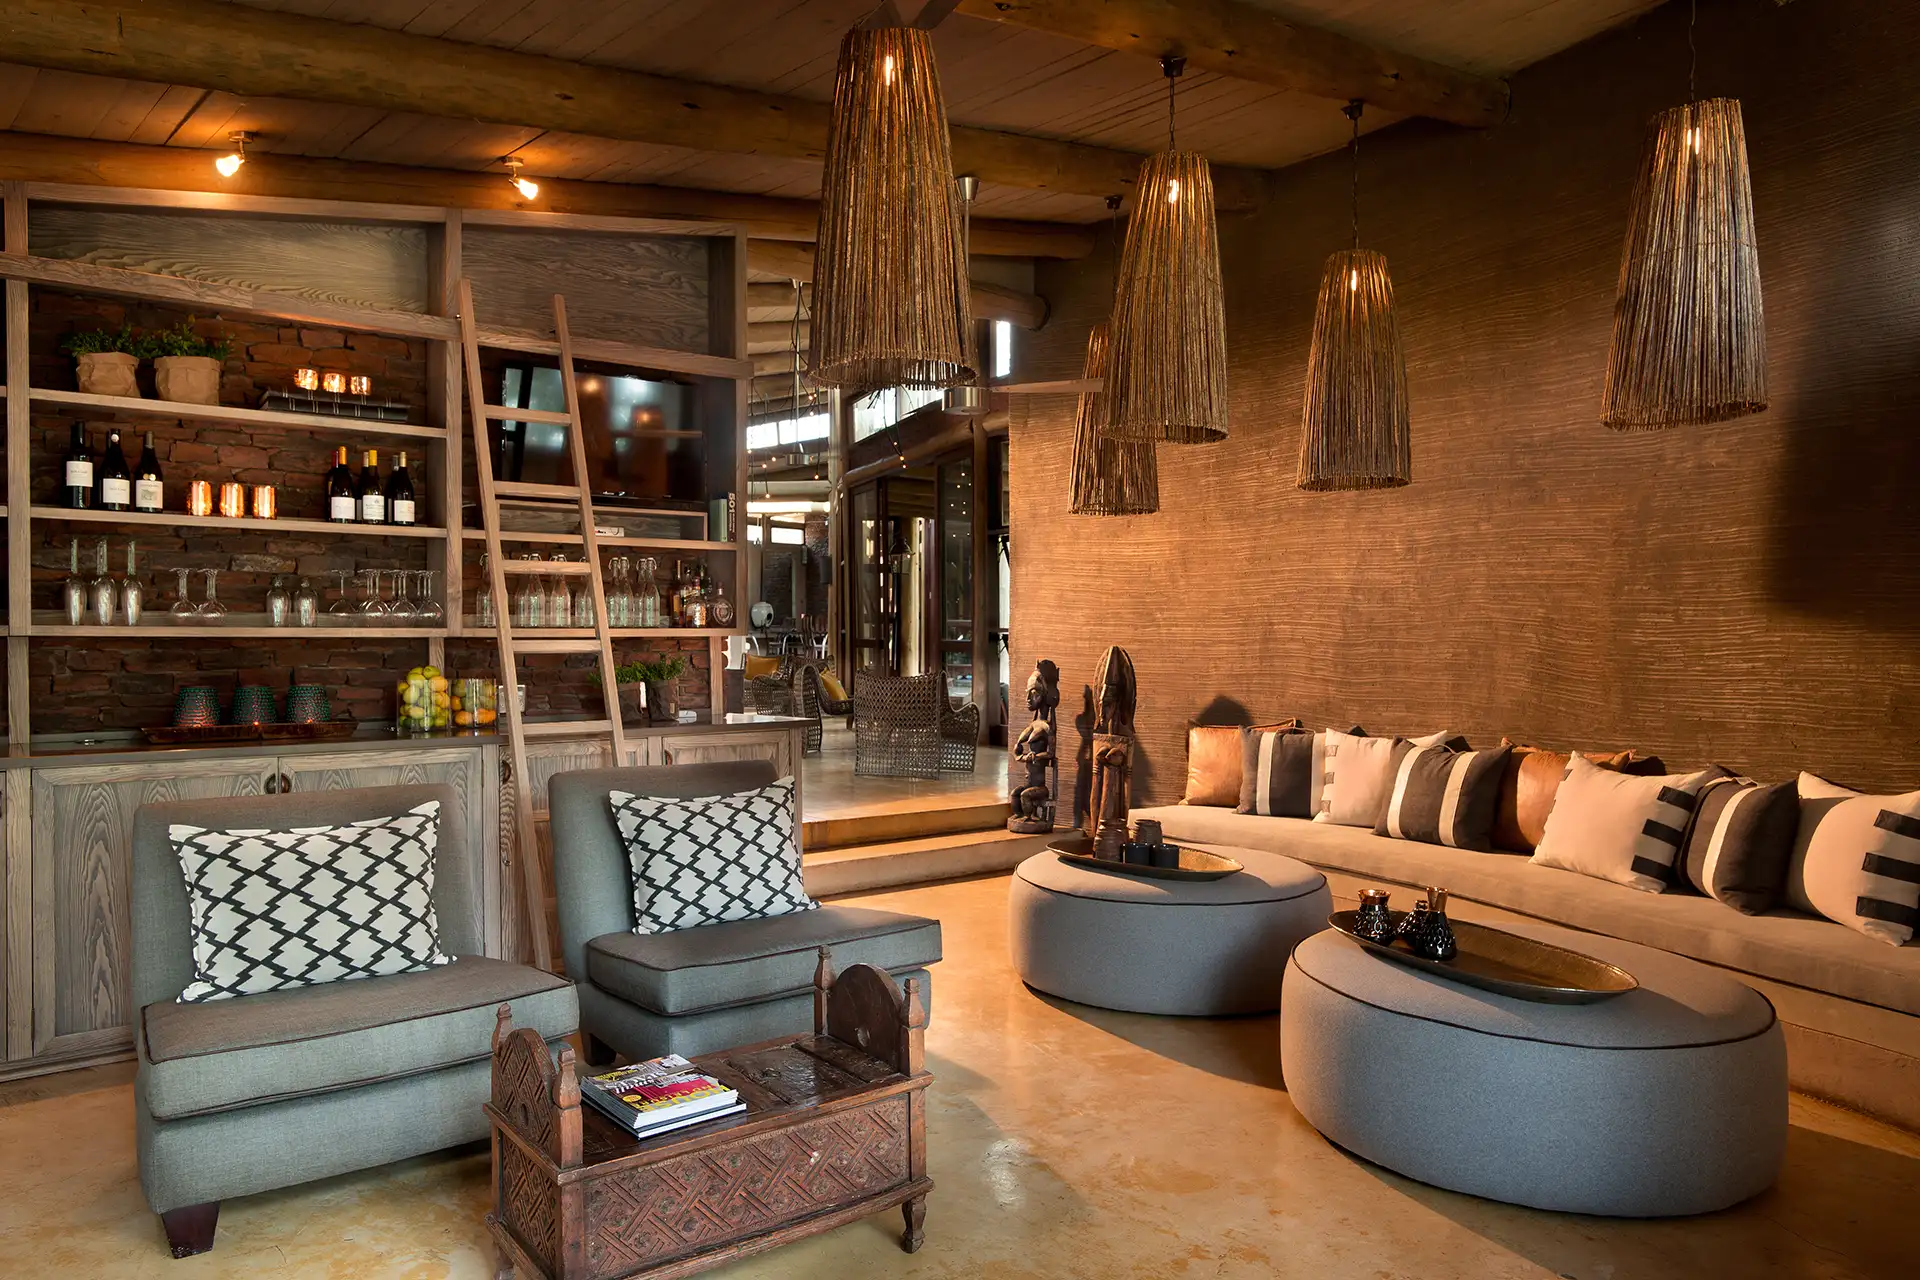 Gemütliche Lounge mit Bar im afrikanischen Stil